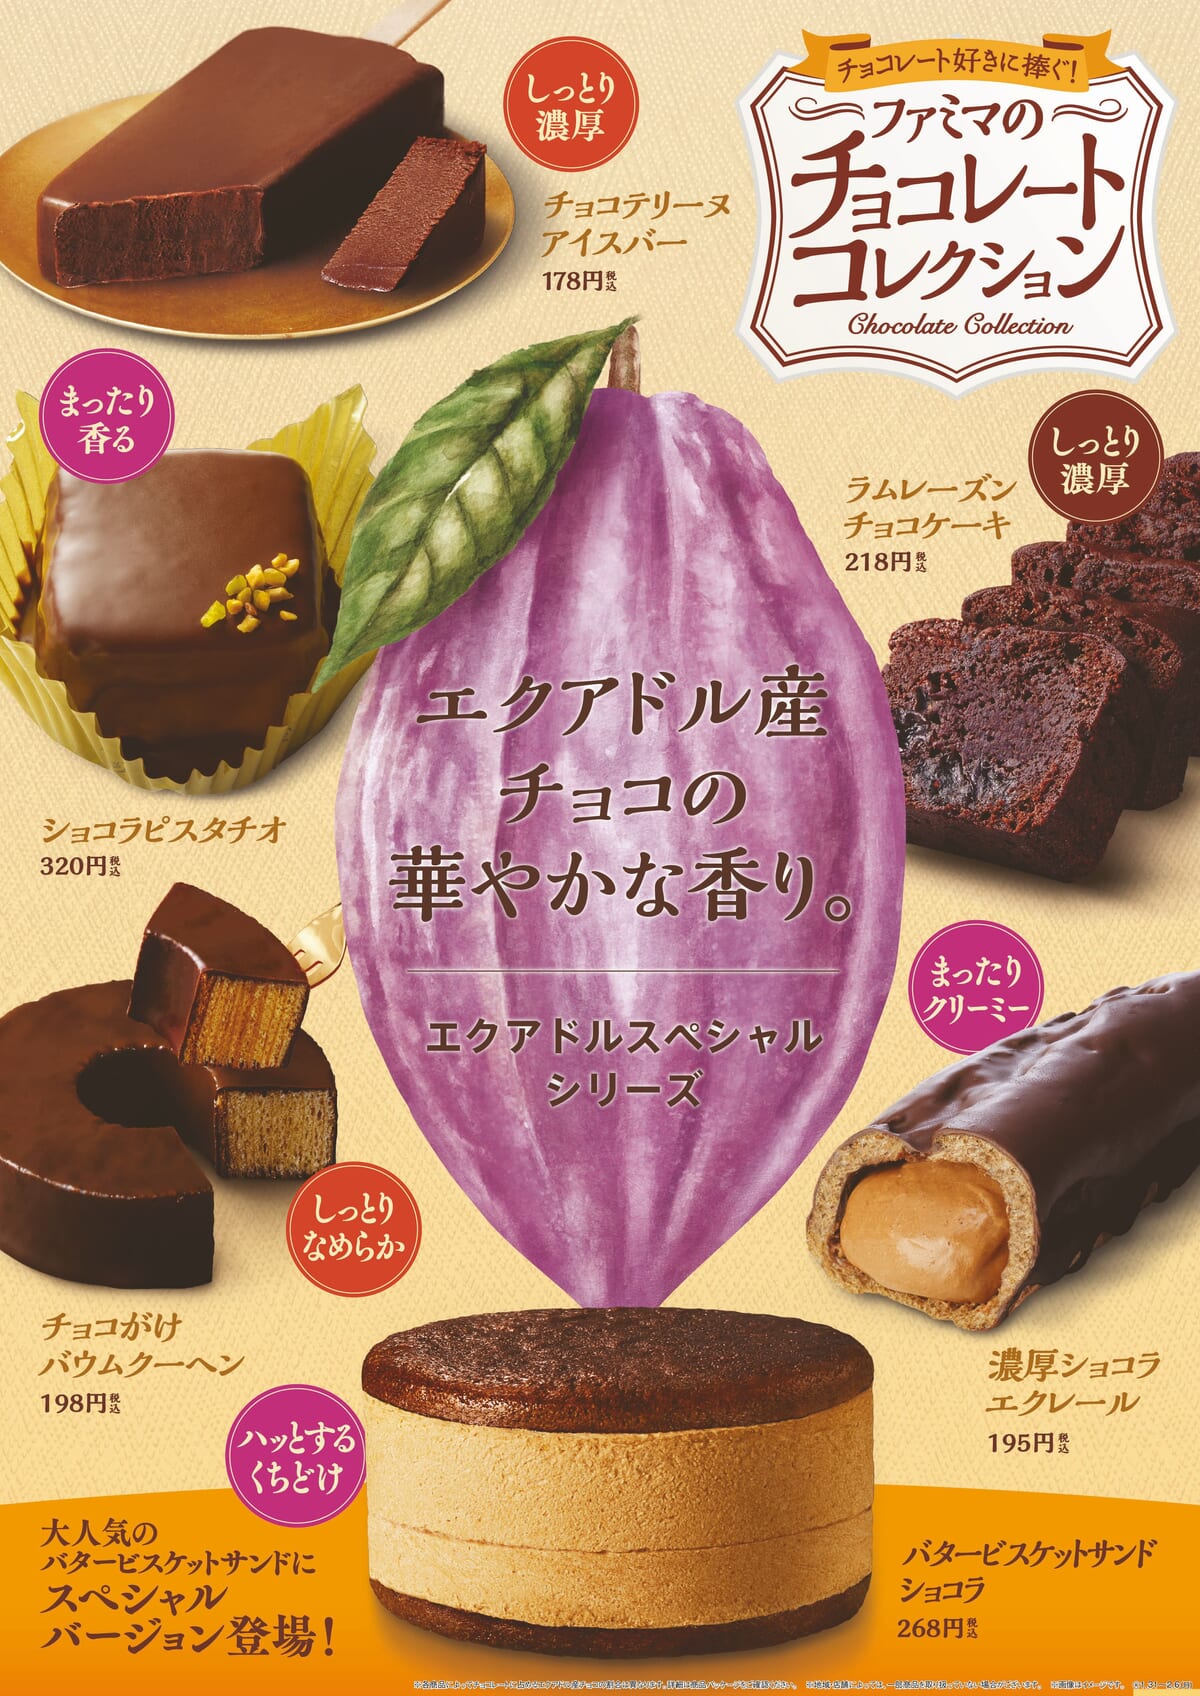 ファミリーマート「チョコレートコレクション」エクアドル・スペシャル